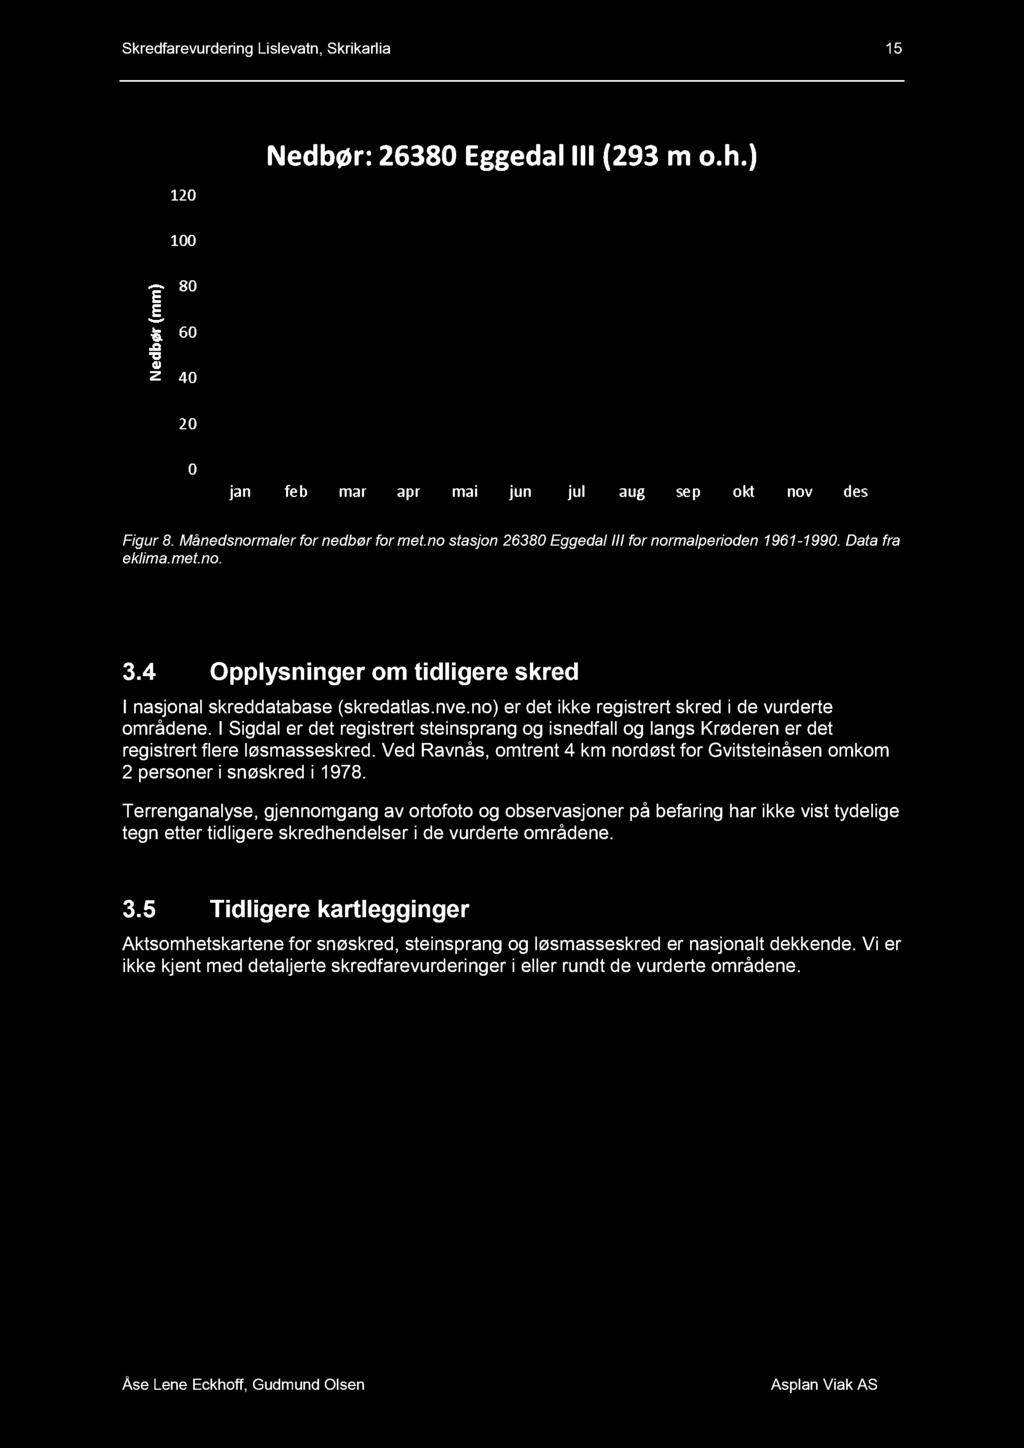 I Sigdal er det registrert steinsprang og isnedfall og langs Krøderen er det registrert flere løsmasseskred. Ved Ravnås, omtrent 4 km nordøst for Gvitsteinåse n omkom 2 personer i snøskred i 1978.